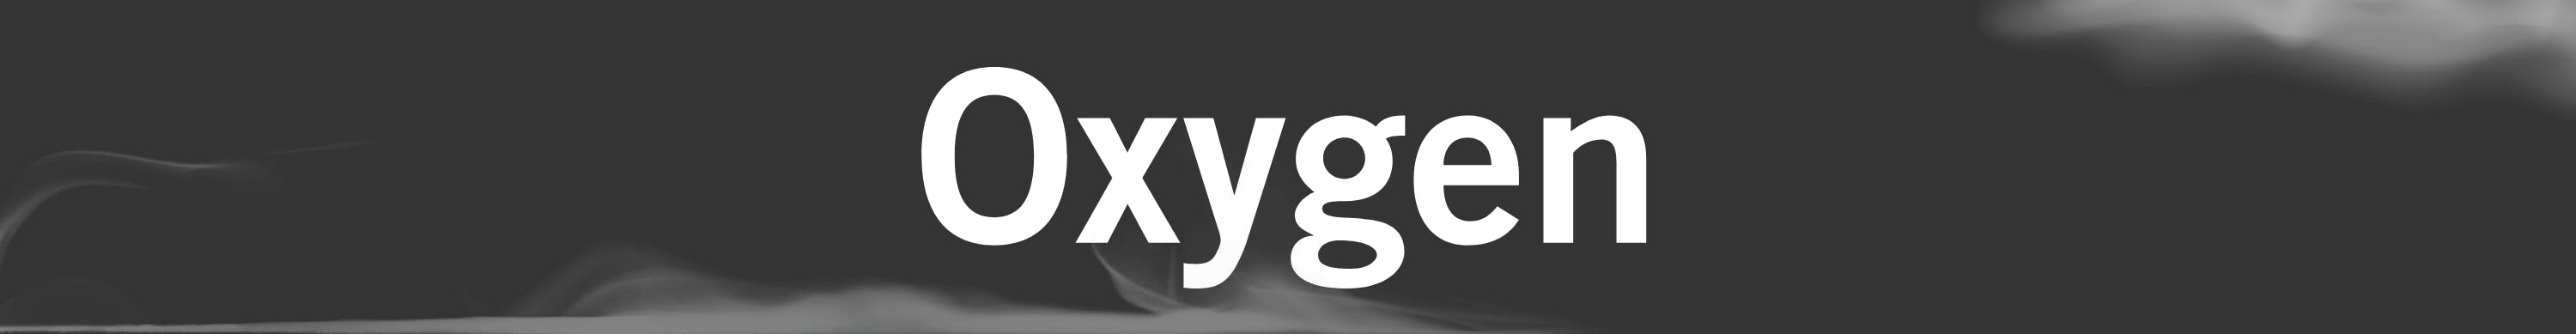 Oxygen Banner